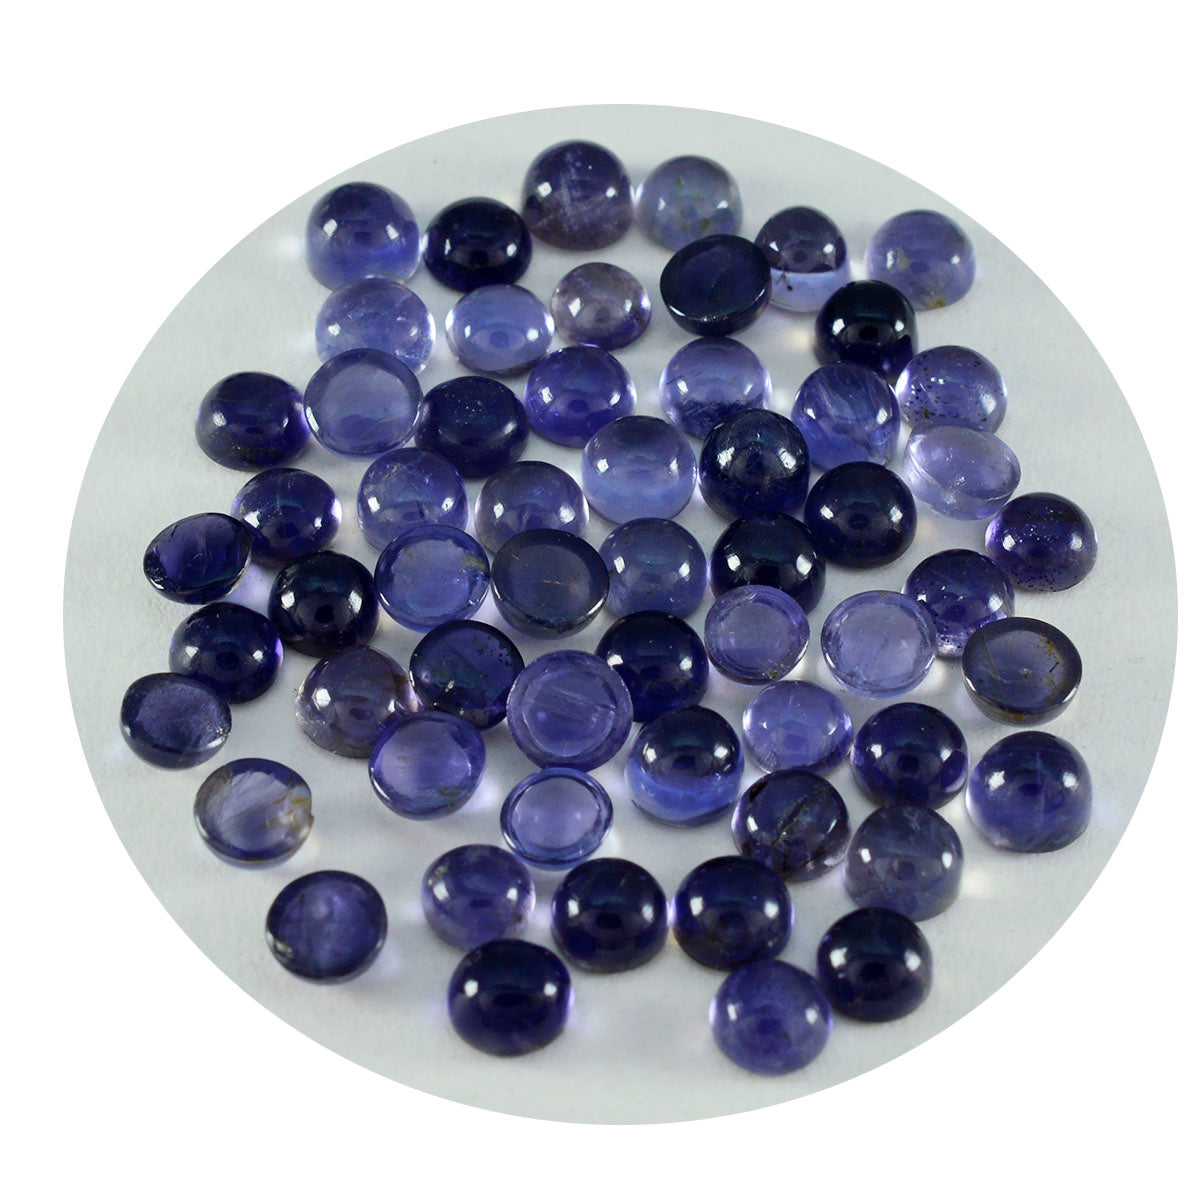 Riyogems 1 cabochon iolite bleu 3x3 mm forme ronde jolie gemme de qualité